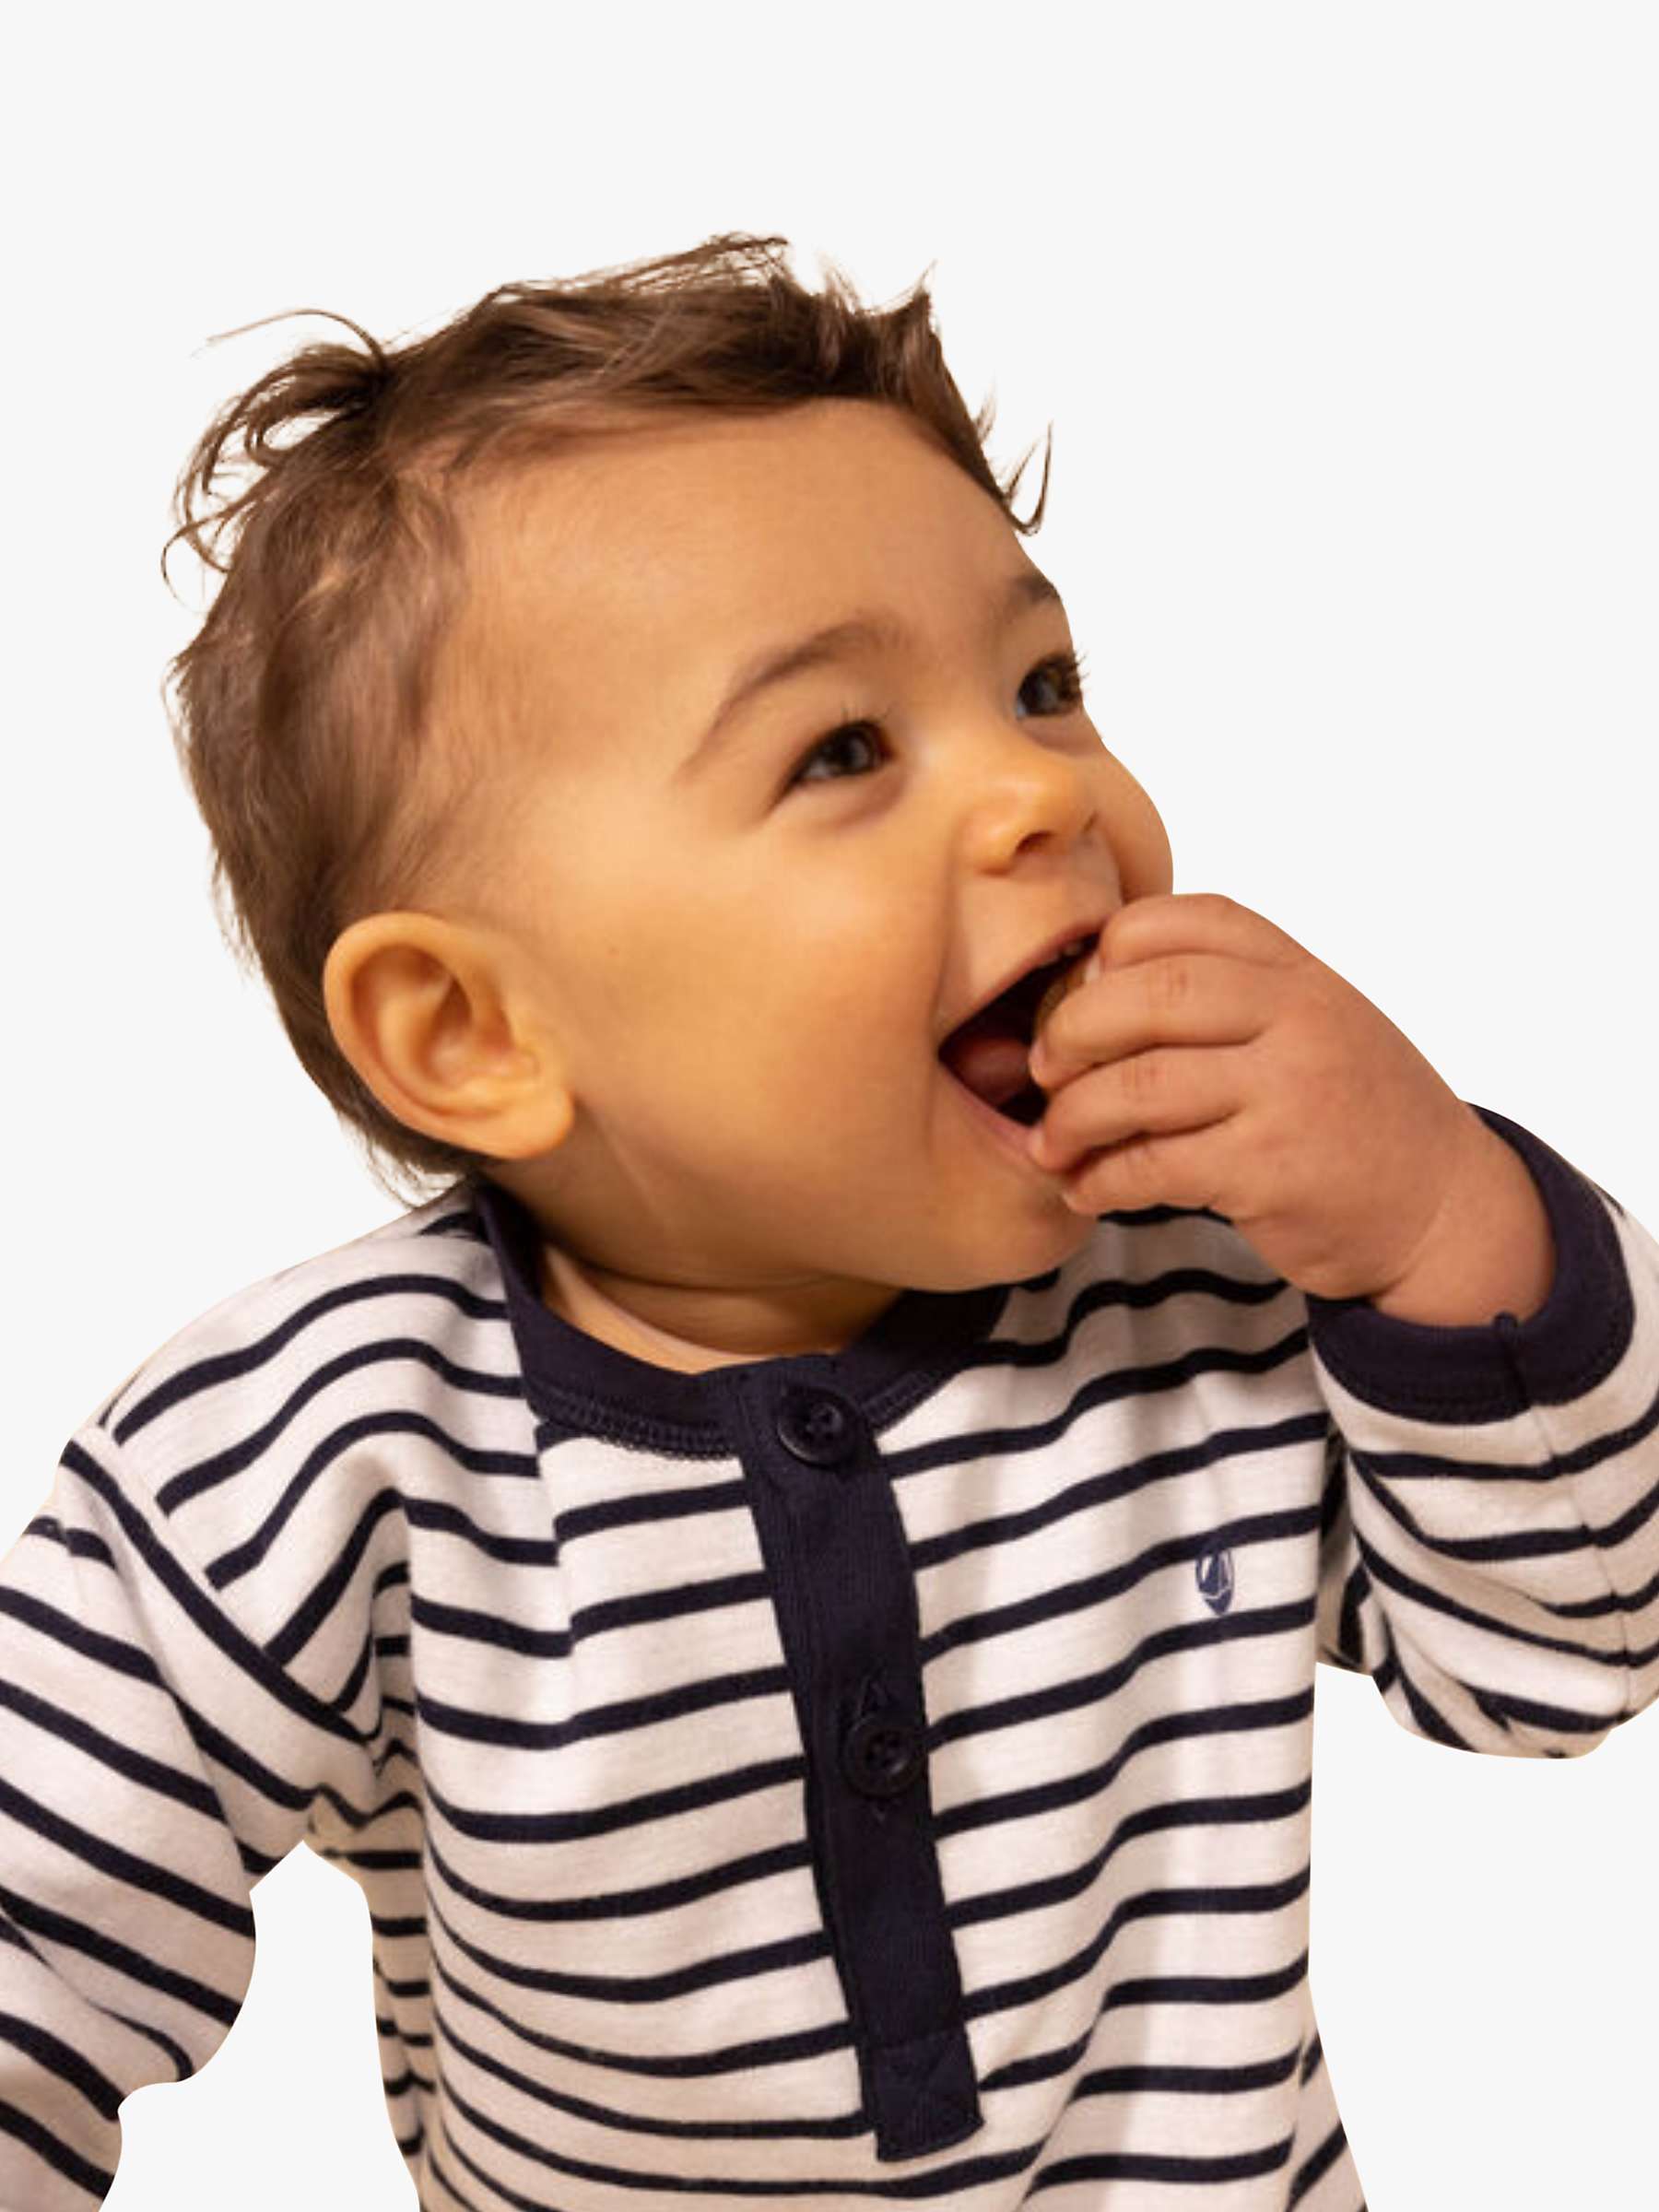 Buy Petit Bateau Baby Breton Stripe Jumpsuit, Marshmallow/Smoke Online at johnlewis.com